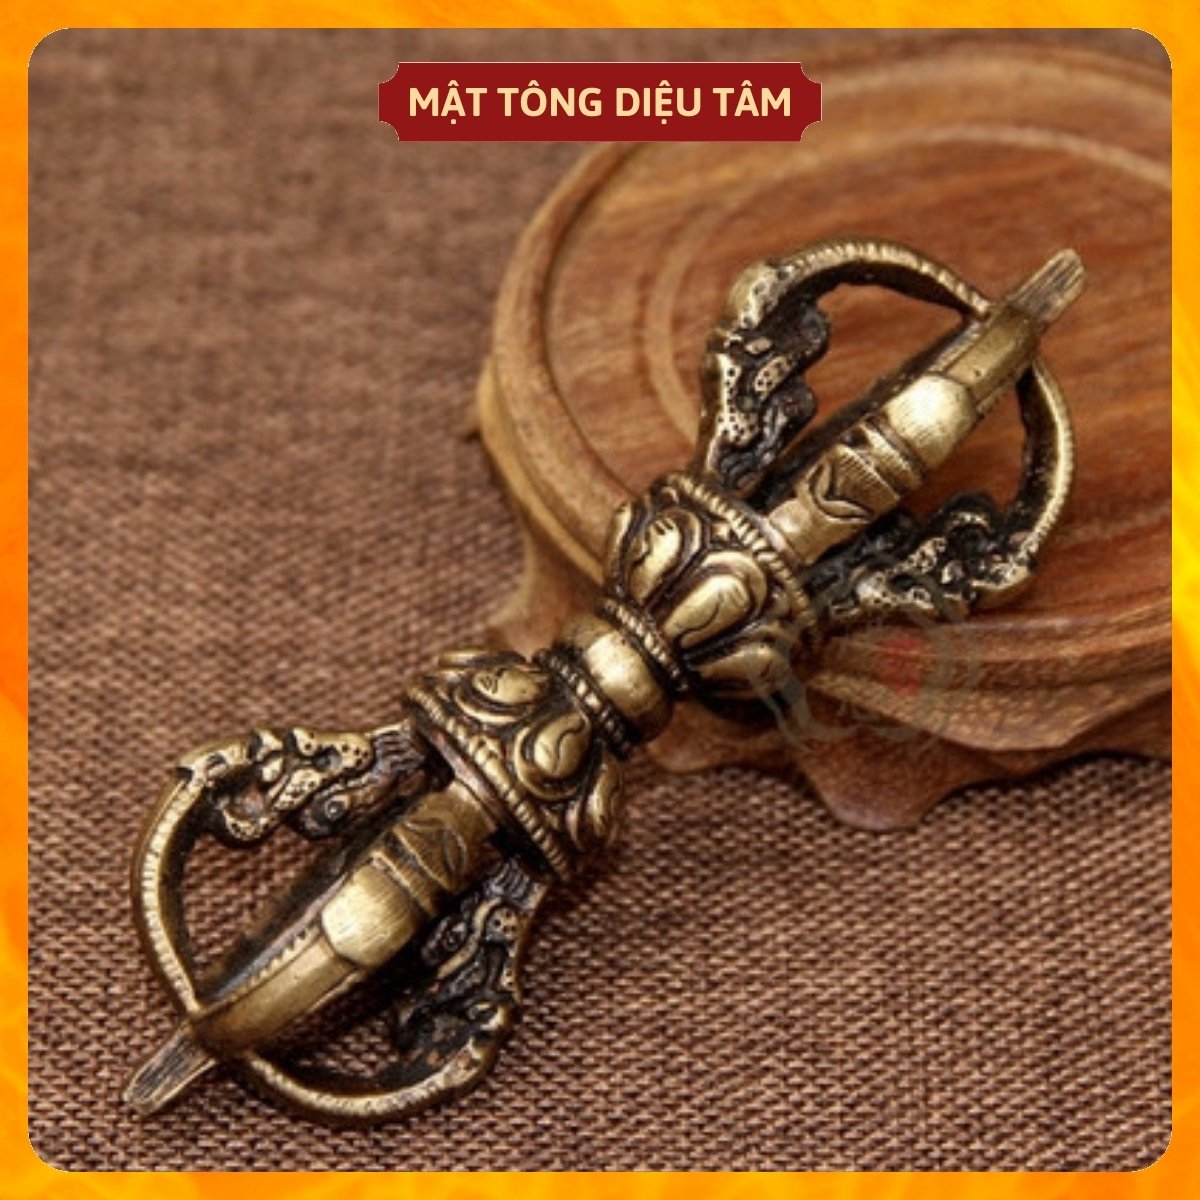 Chuông chày kim cang - Linh đồng - chuông lắc - chuông tay - pháp khí mật tông bằng đồng tráng bạc cỡ lớn MS1K Diệu Tâm